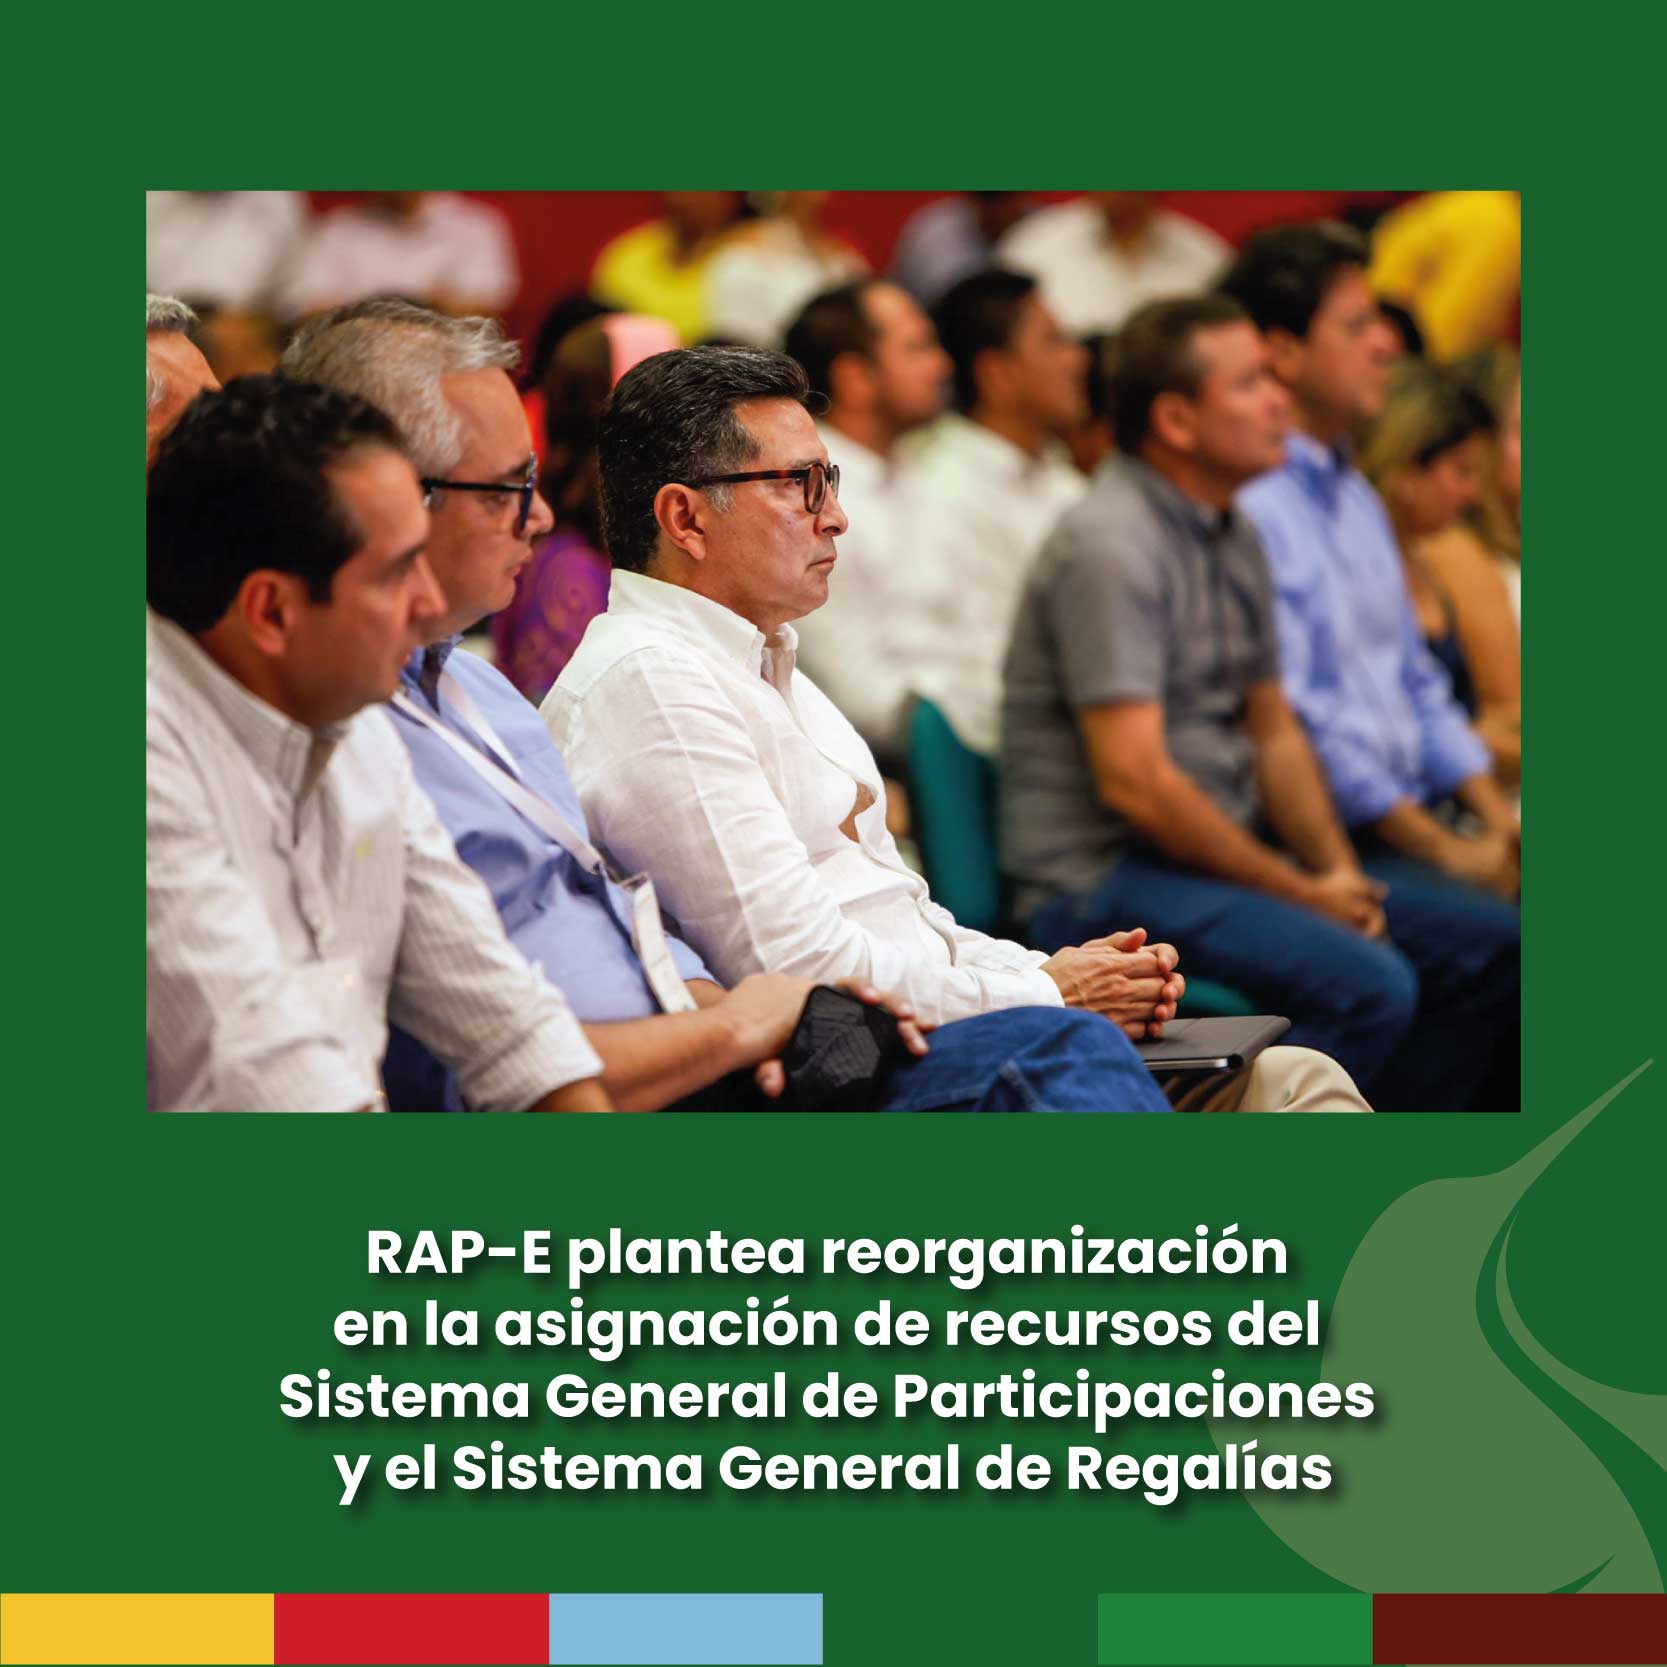 RAP-E plantea reorganización en la asignación de recursos del Sistema General de Participaciones y el Sistema General de Regalías